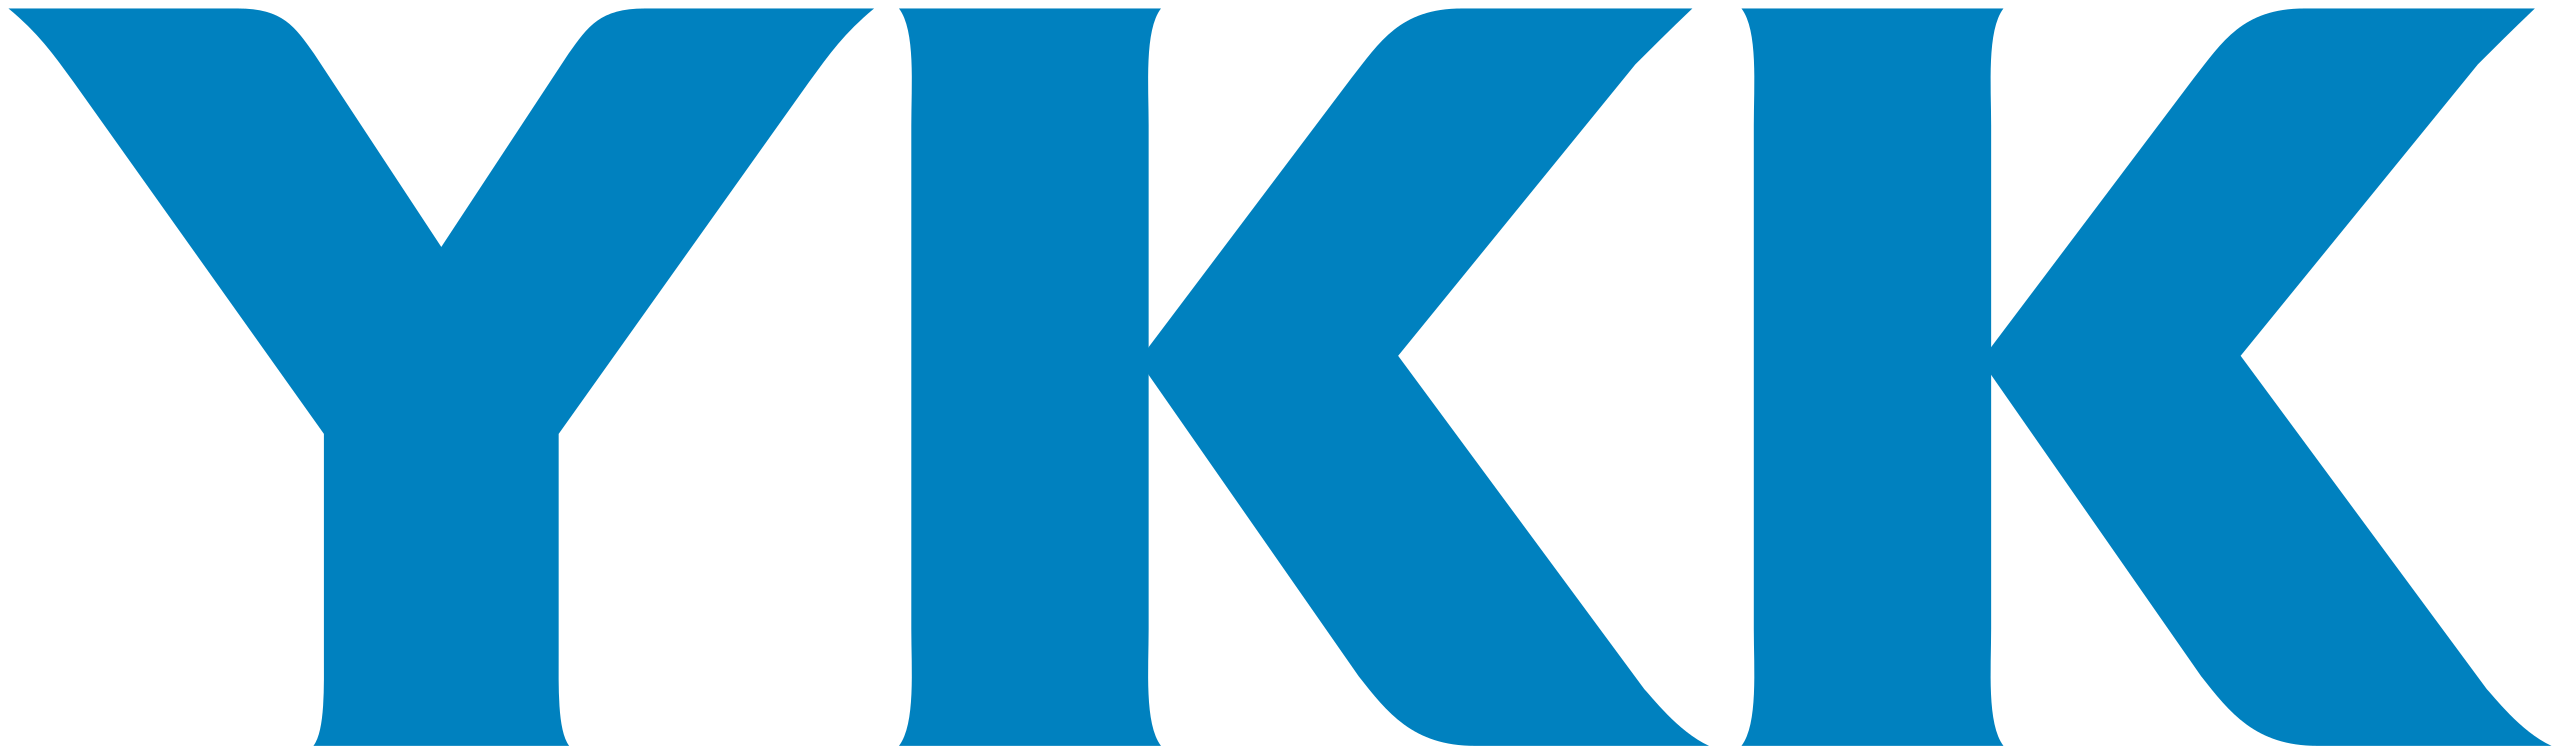 YKK_Group_Logo